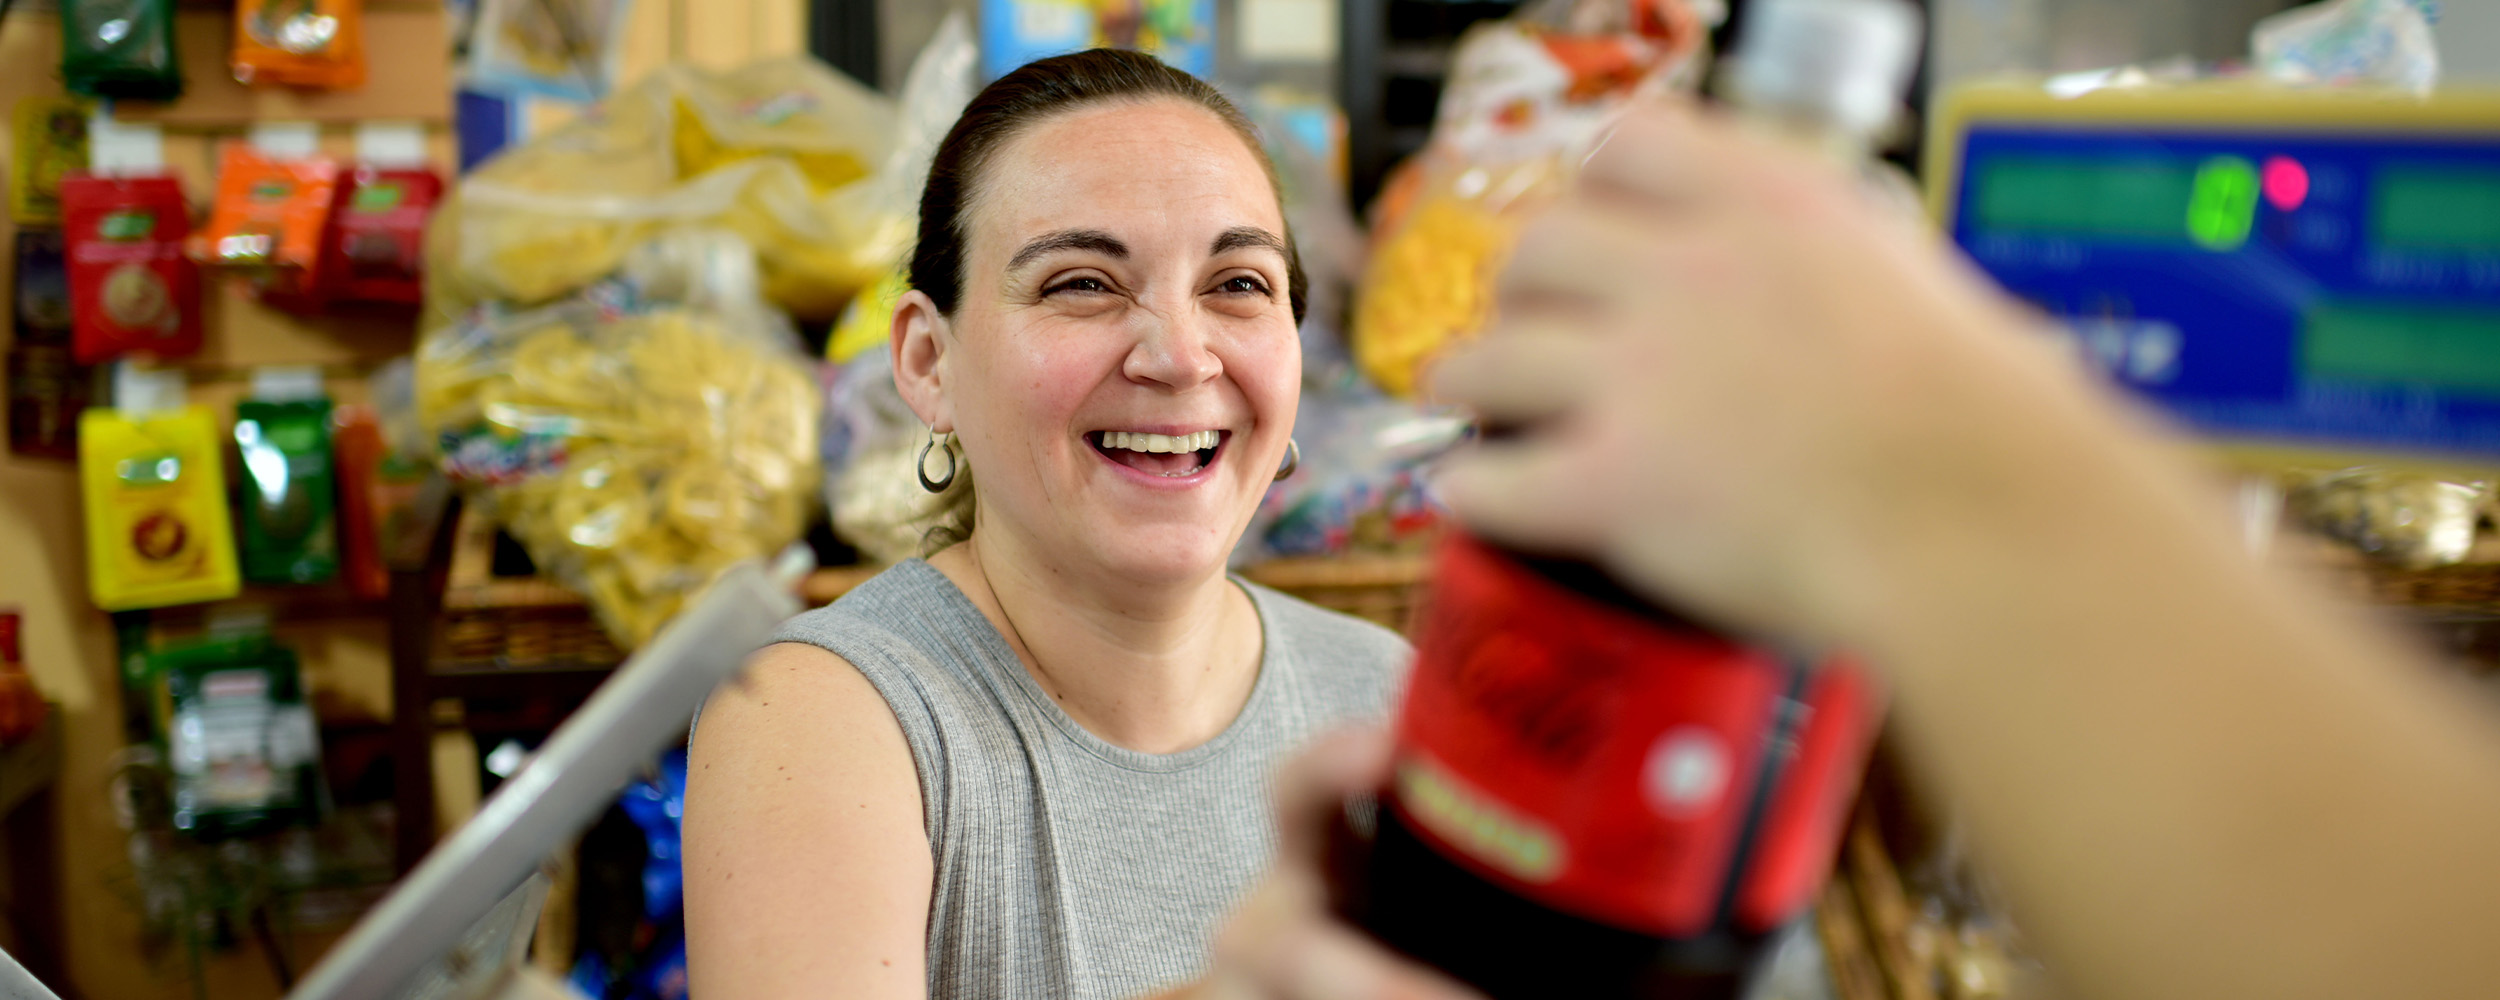 Una mujer sonriente, recibe una botella de Coca-Cola en una tienda